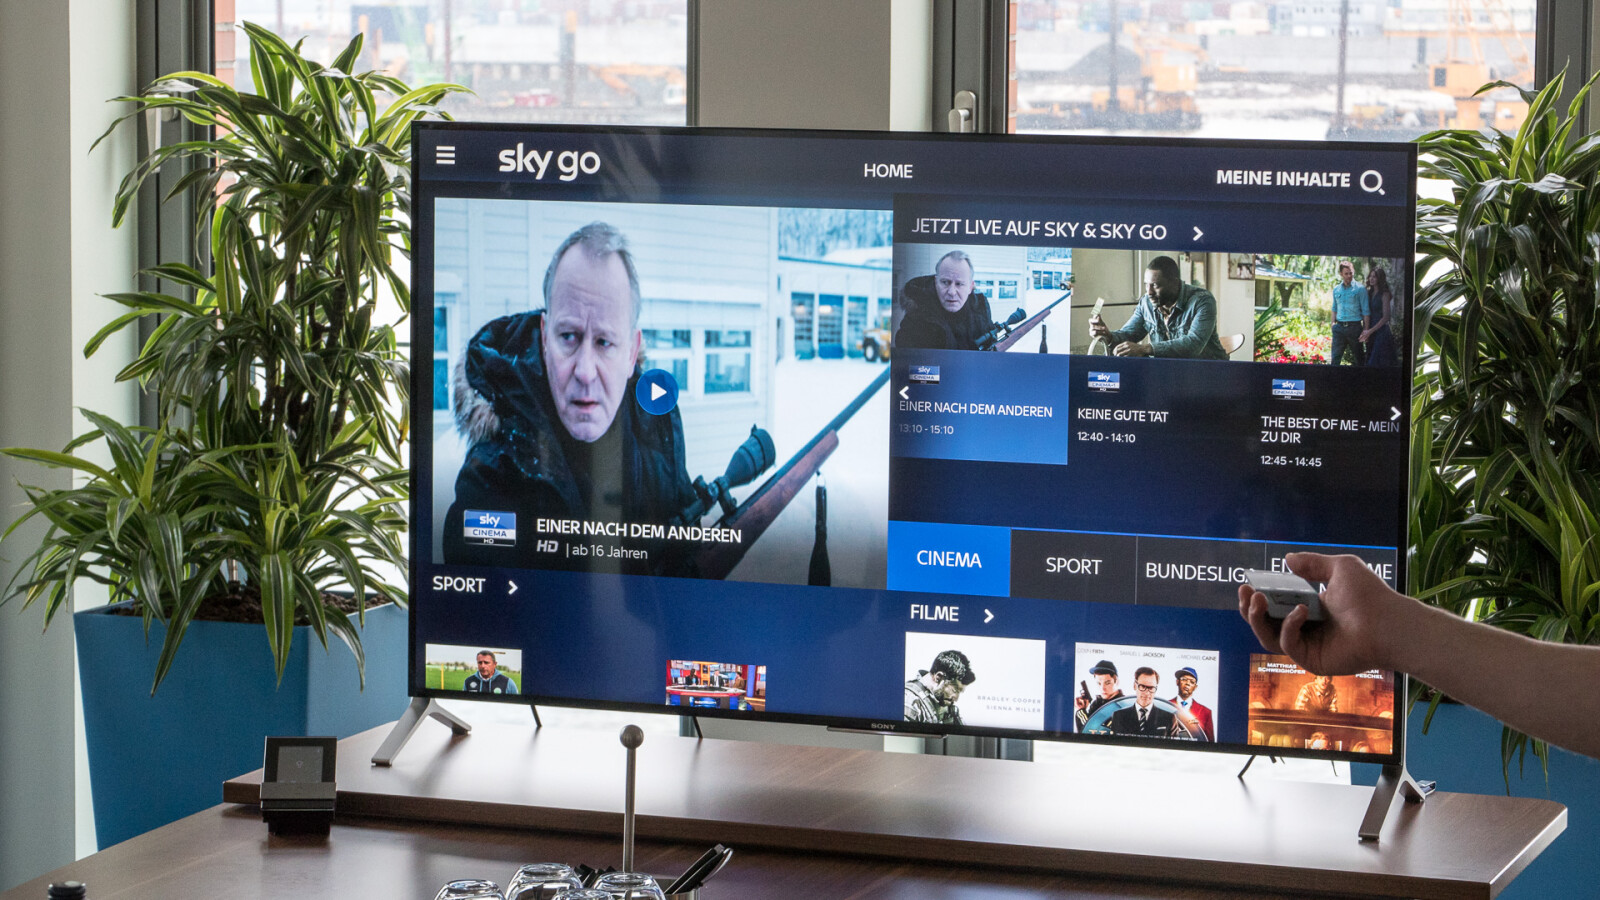 Android TV: So installiert und nutzt ihr Sky Go auf dem Fernseher